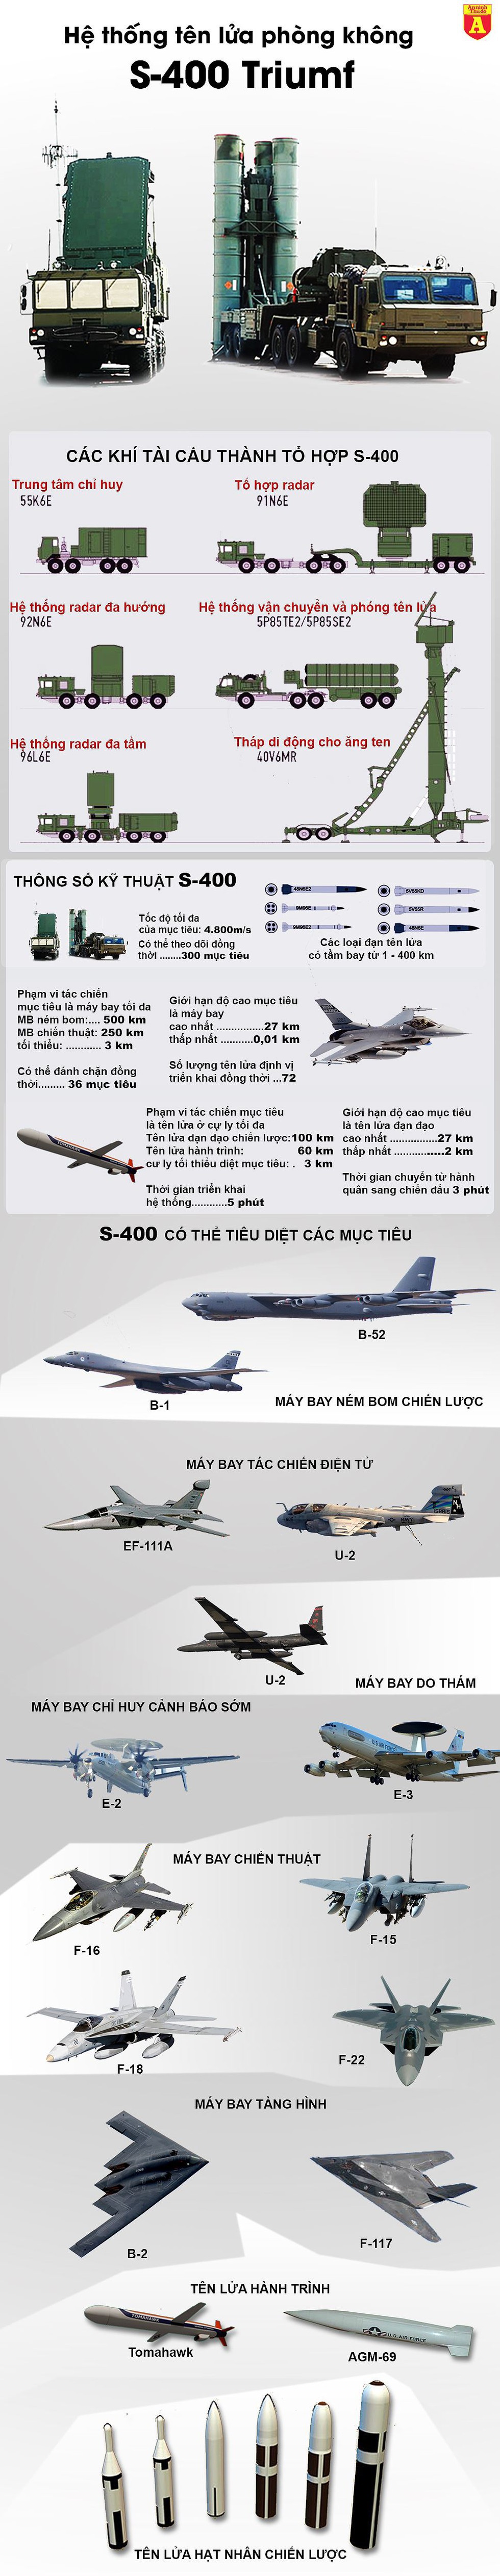 [Infographics] Thương vụ tên lửa S-400 Nga sẽ lại thất bại tại Trung Đông? - Ảnh 1